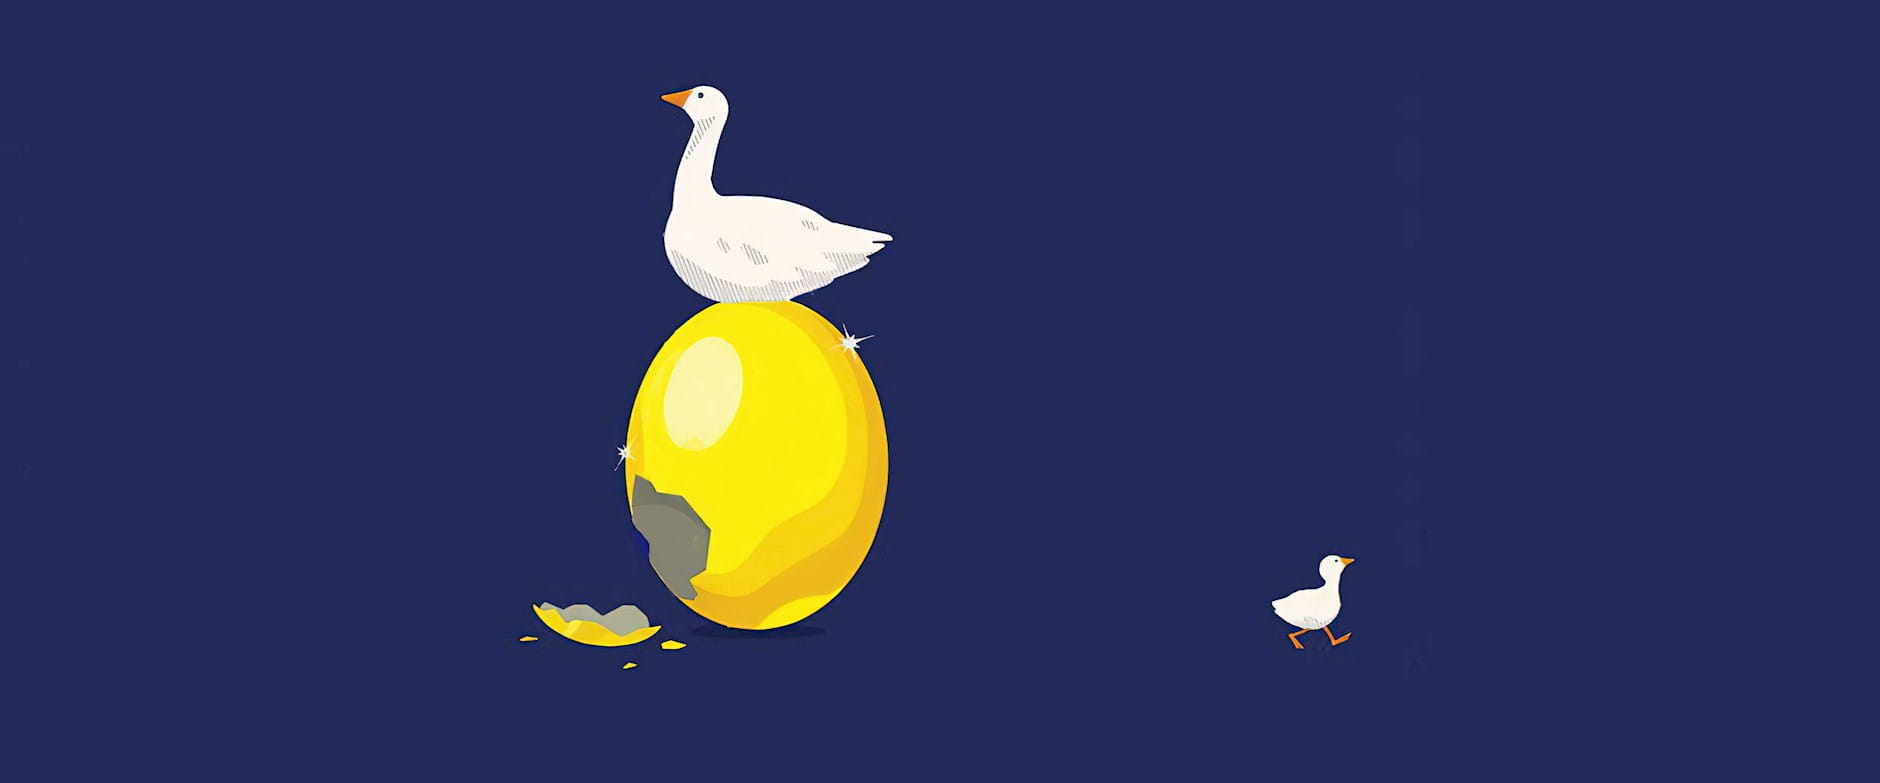 Little goose walking away from golden egg